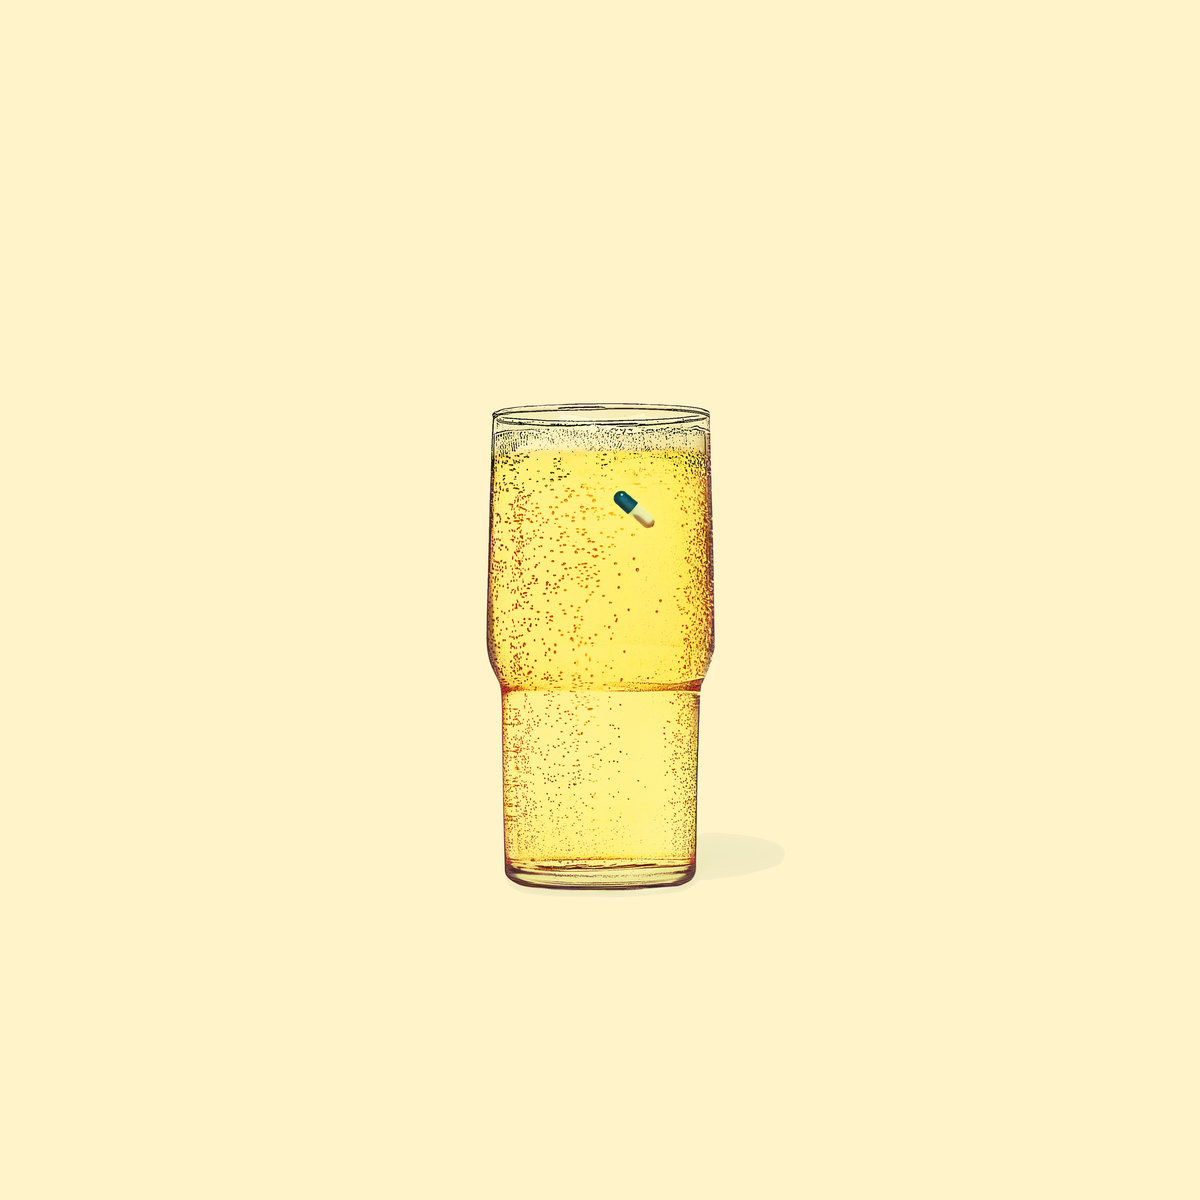 Platten-Cover: Zeichnung eines hohen Glases mit einer gelben Flüssigkeit mit Kohlensäure und darin schwimmend einer zweifarbigen Pille